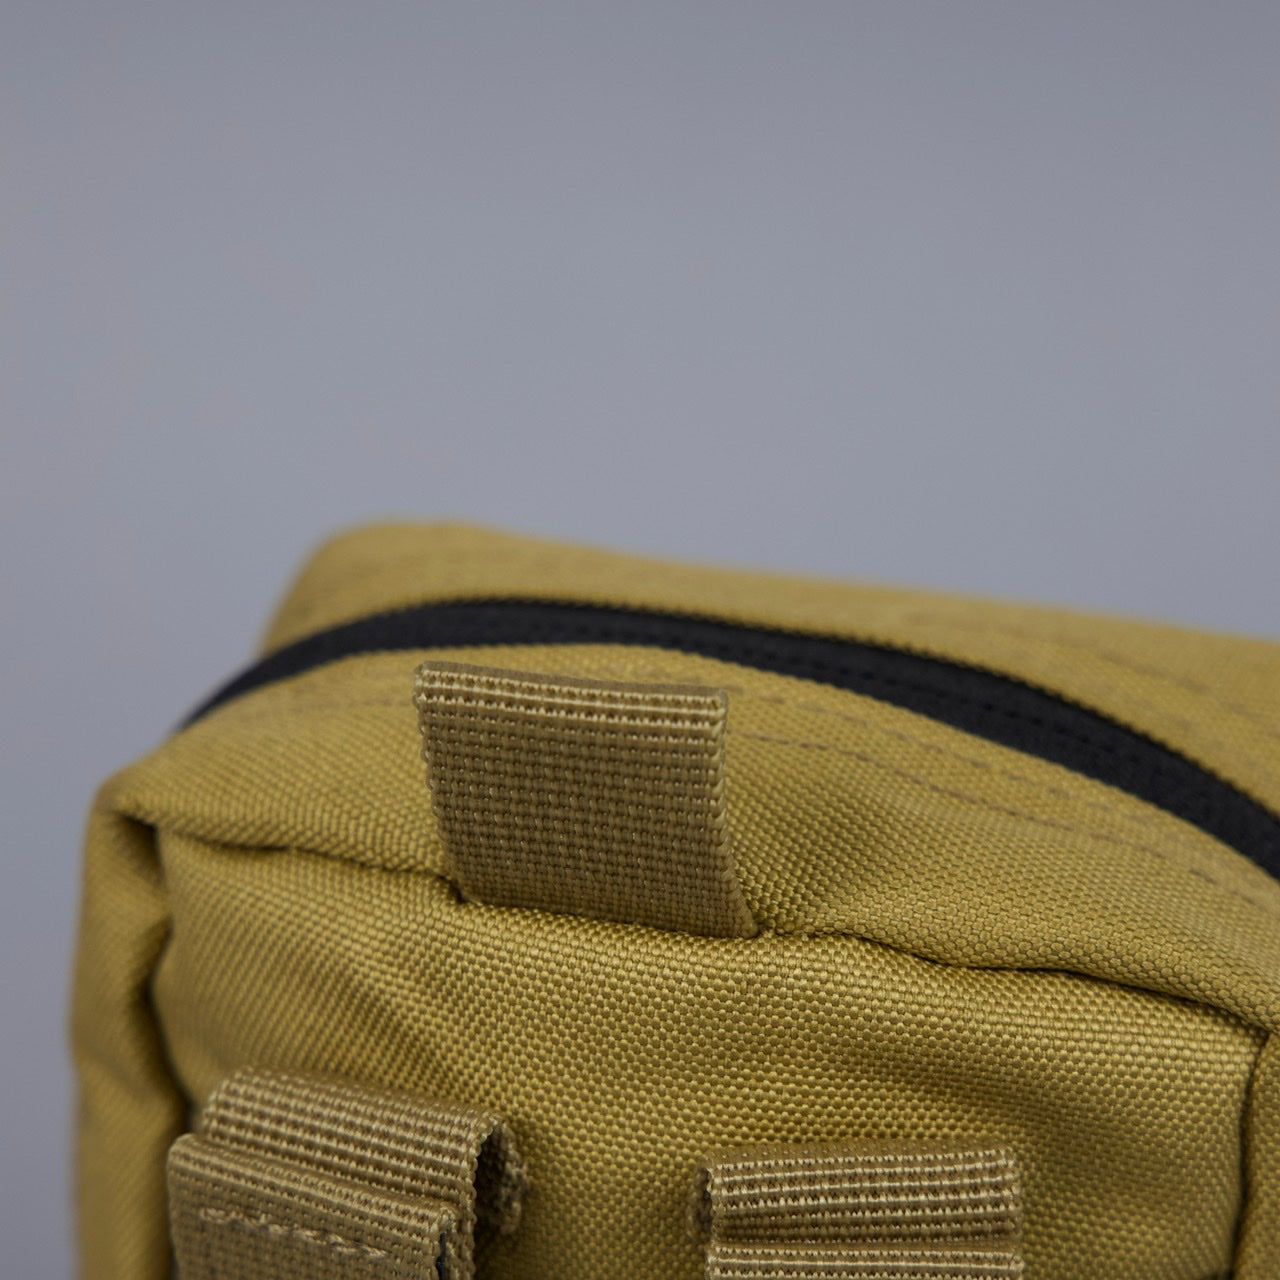 Tactical EDC Pouch Attachment Bag Khaki